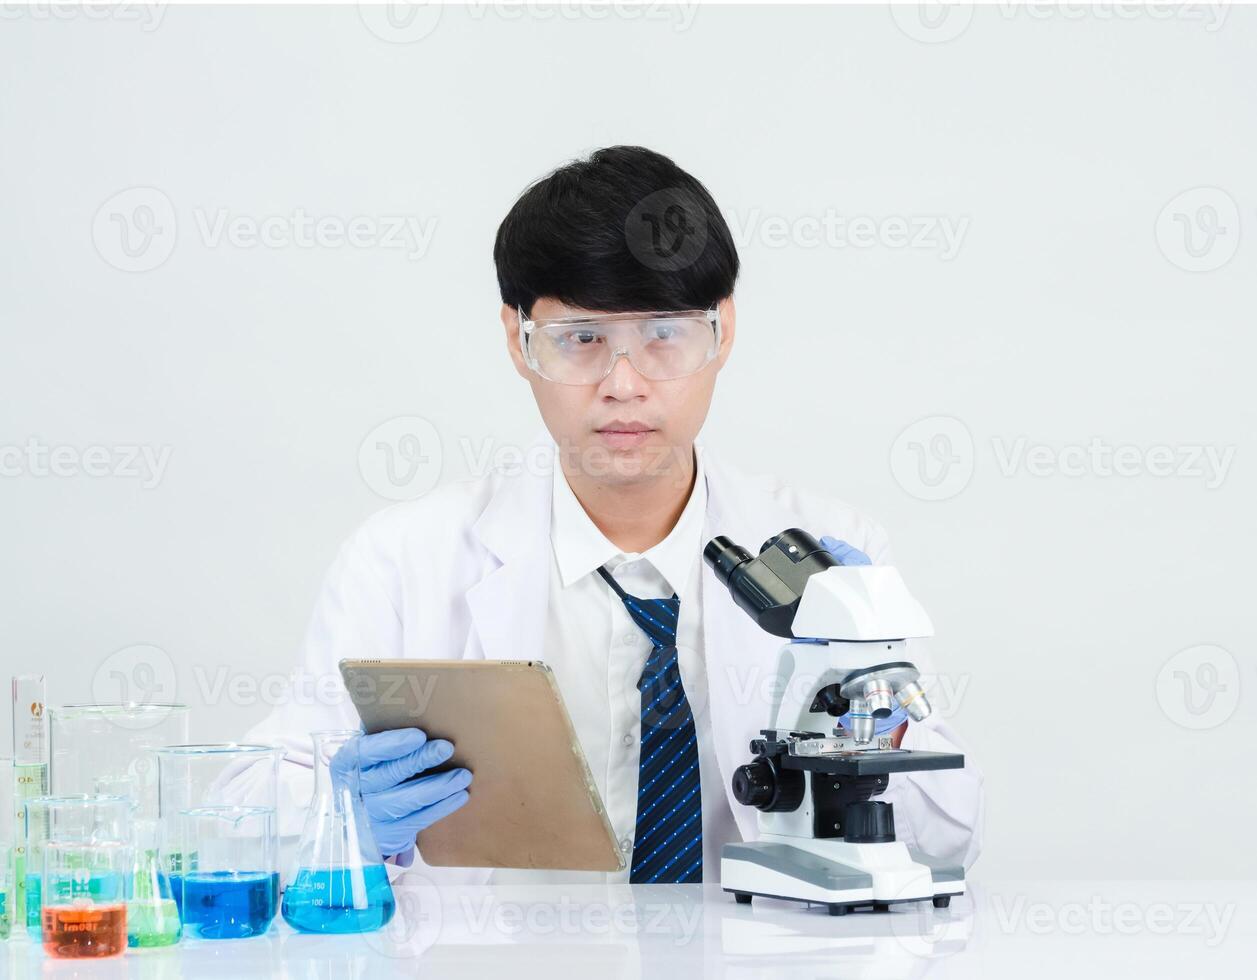 retrato ásia homem aluna cientista médico dentro camisa vestido 1 pessoa trabalho trabalho plantar olhando mão segurando ao controle microscópio em branco mesa Vejo a resultados do científico experimentos dentro laboratório foto